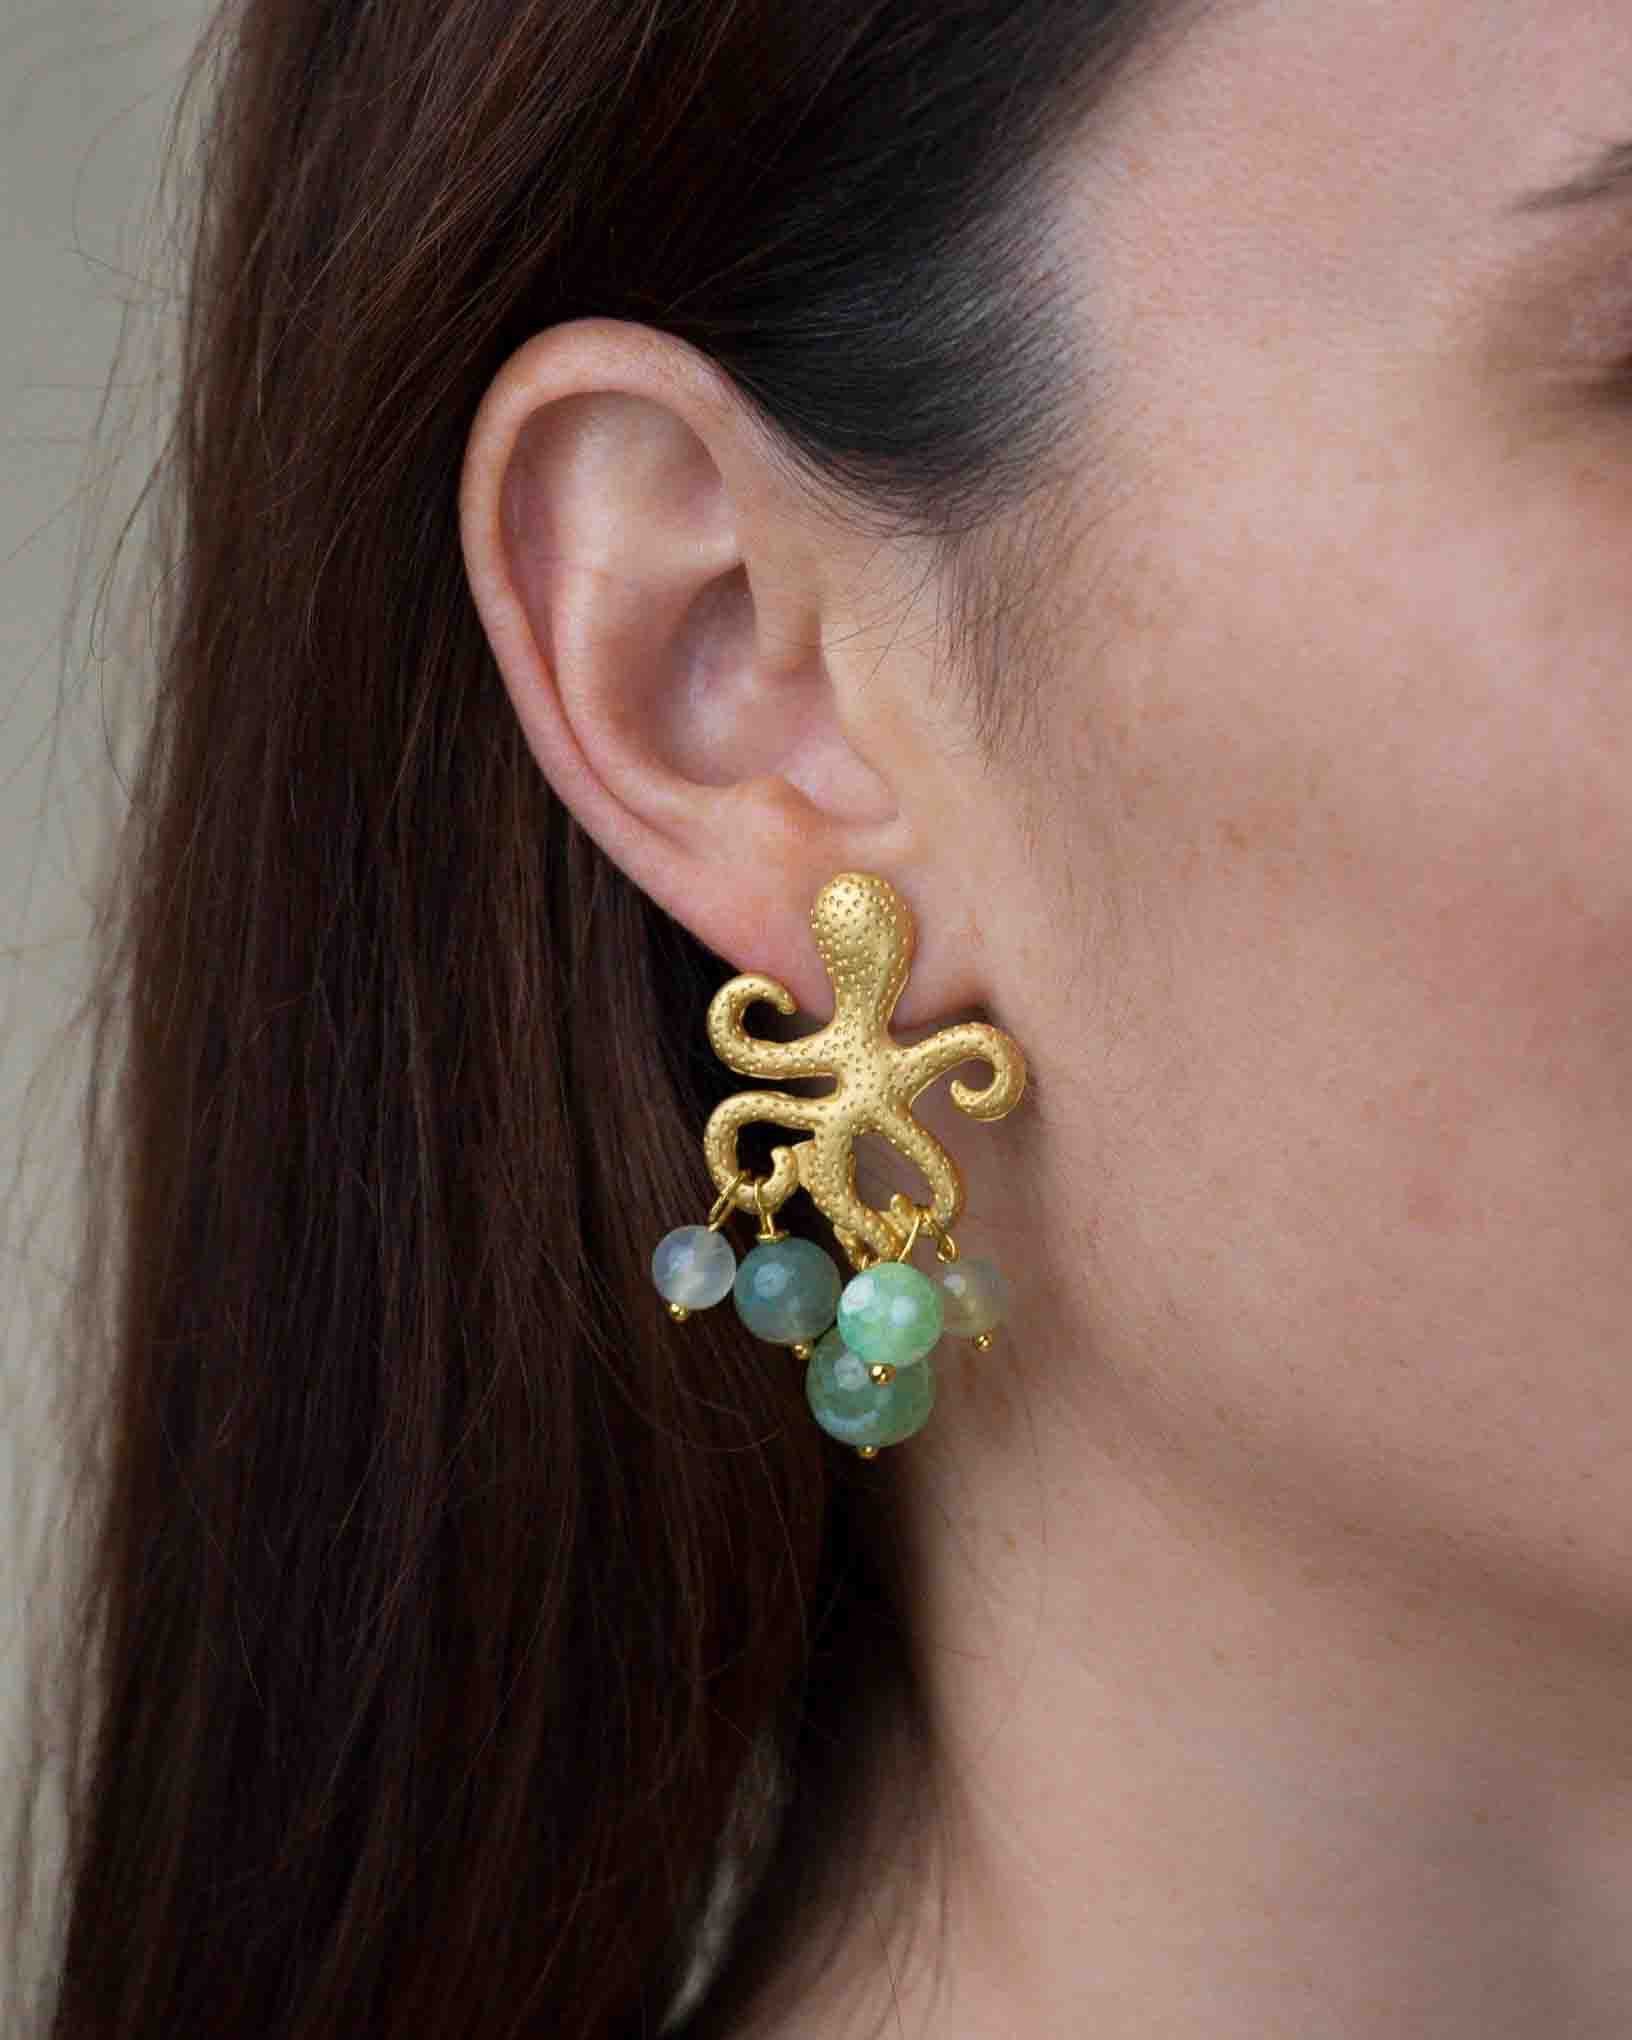 Ohrring Piovra aus der Kollektion I Classici von Donna Rachele Jewelry